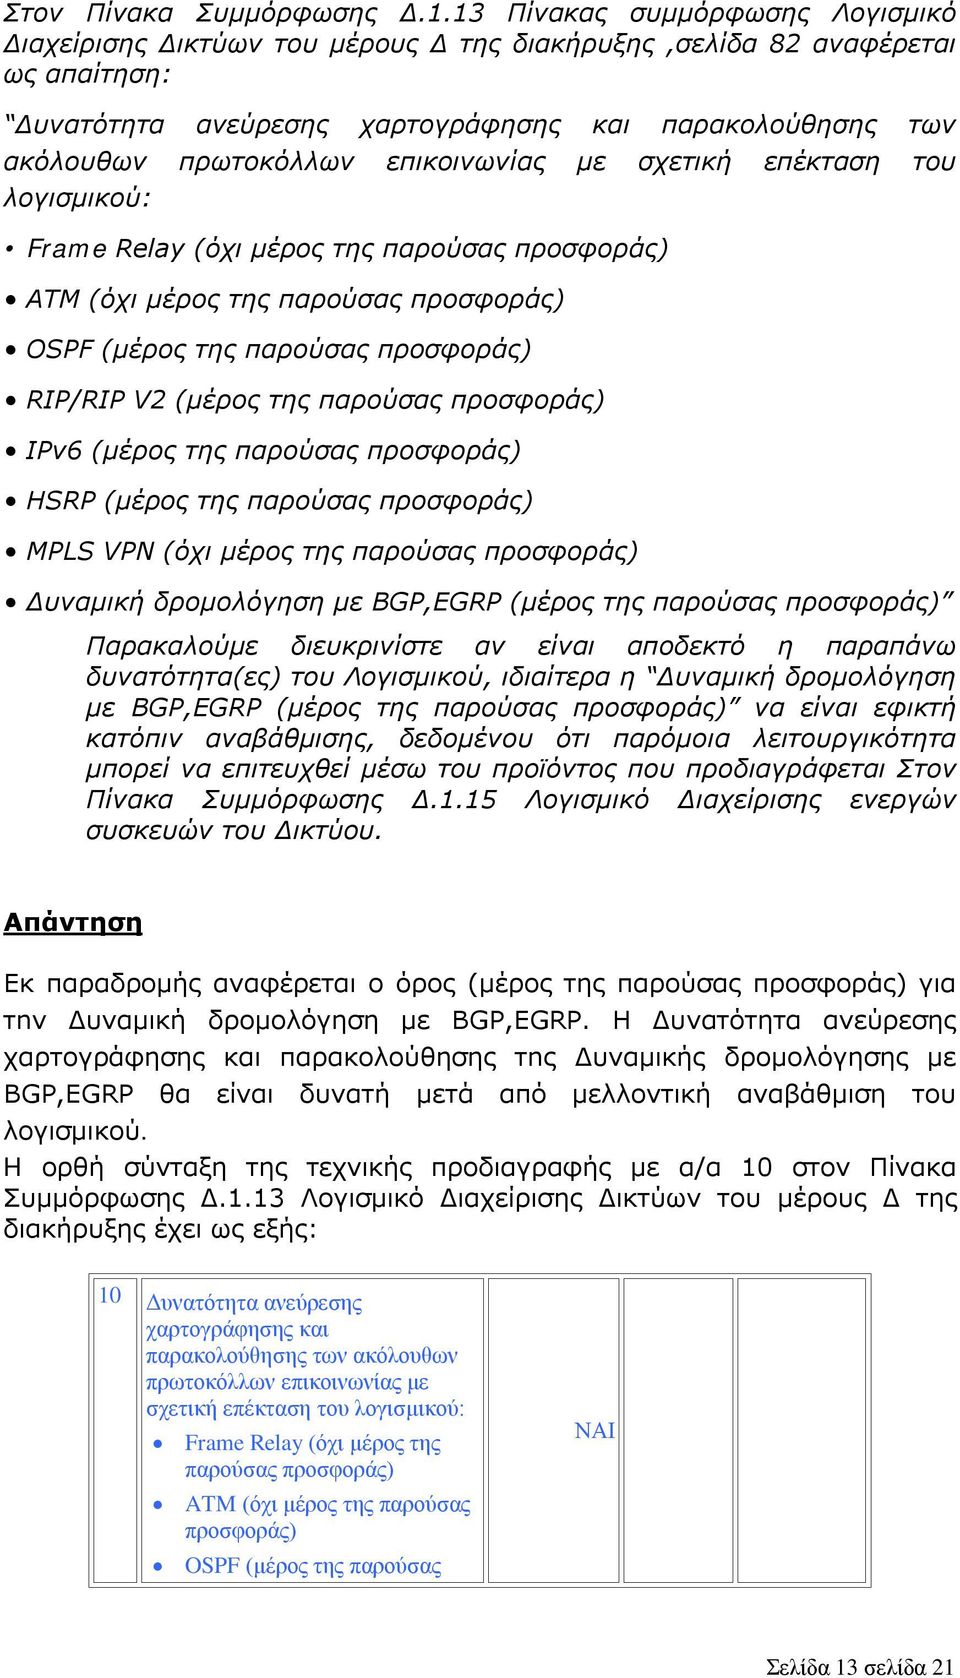 επικοινωνίας με σχετική επέκταση του λογισμικού: Frame Relay (όχι μέρος της παρούσας προσφοράς) ATM (όχι μέρος της παρούσας προσφοράς) OSPF (μέρος της παρούσας προσφοράς) RIP/RIP V2 (μέρος της